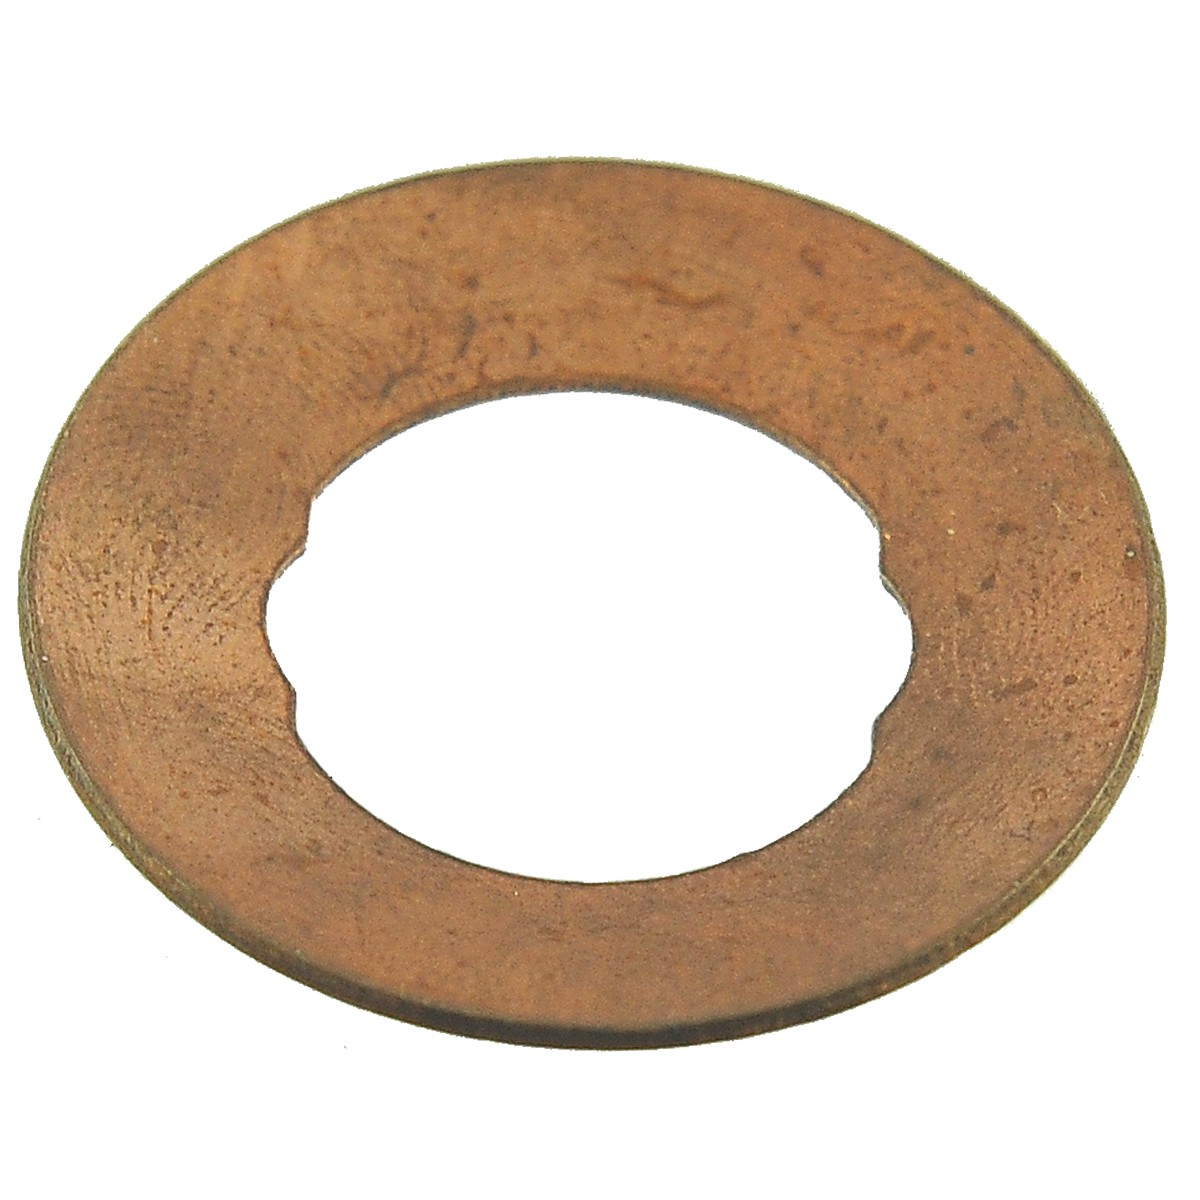 Arandela de cobre / 21,20 x 37,50 mm / Iseki TS2510 / 1656-304-002-00 / 9-26-107-01